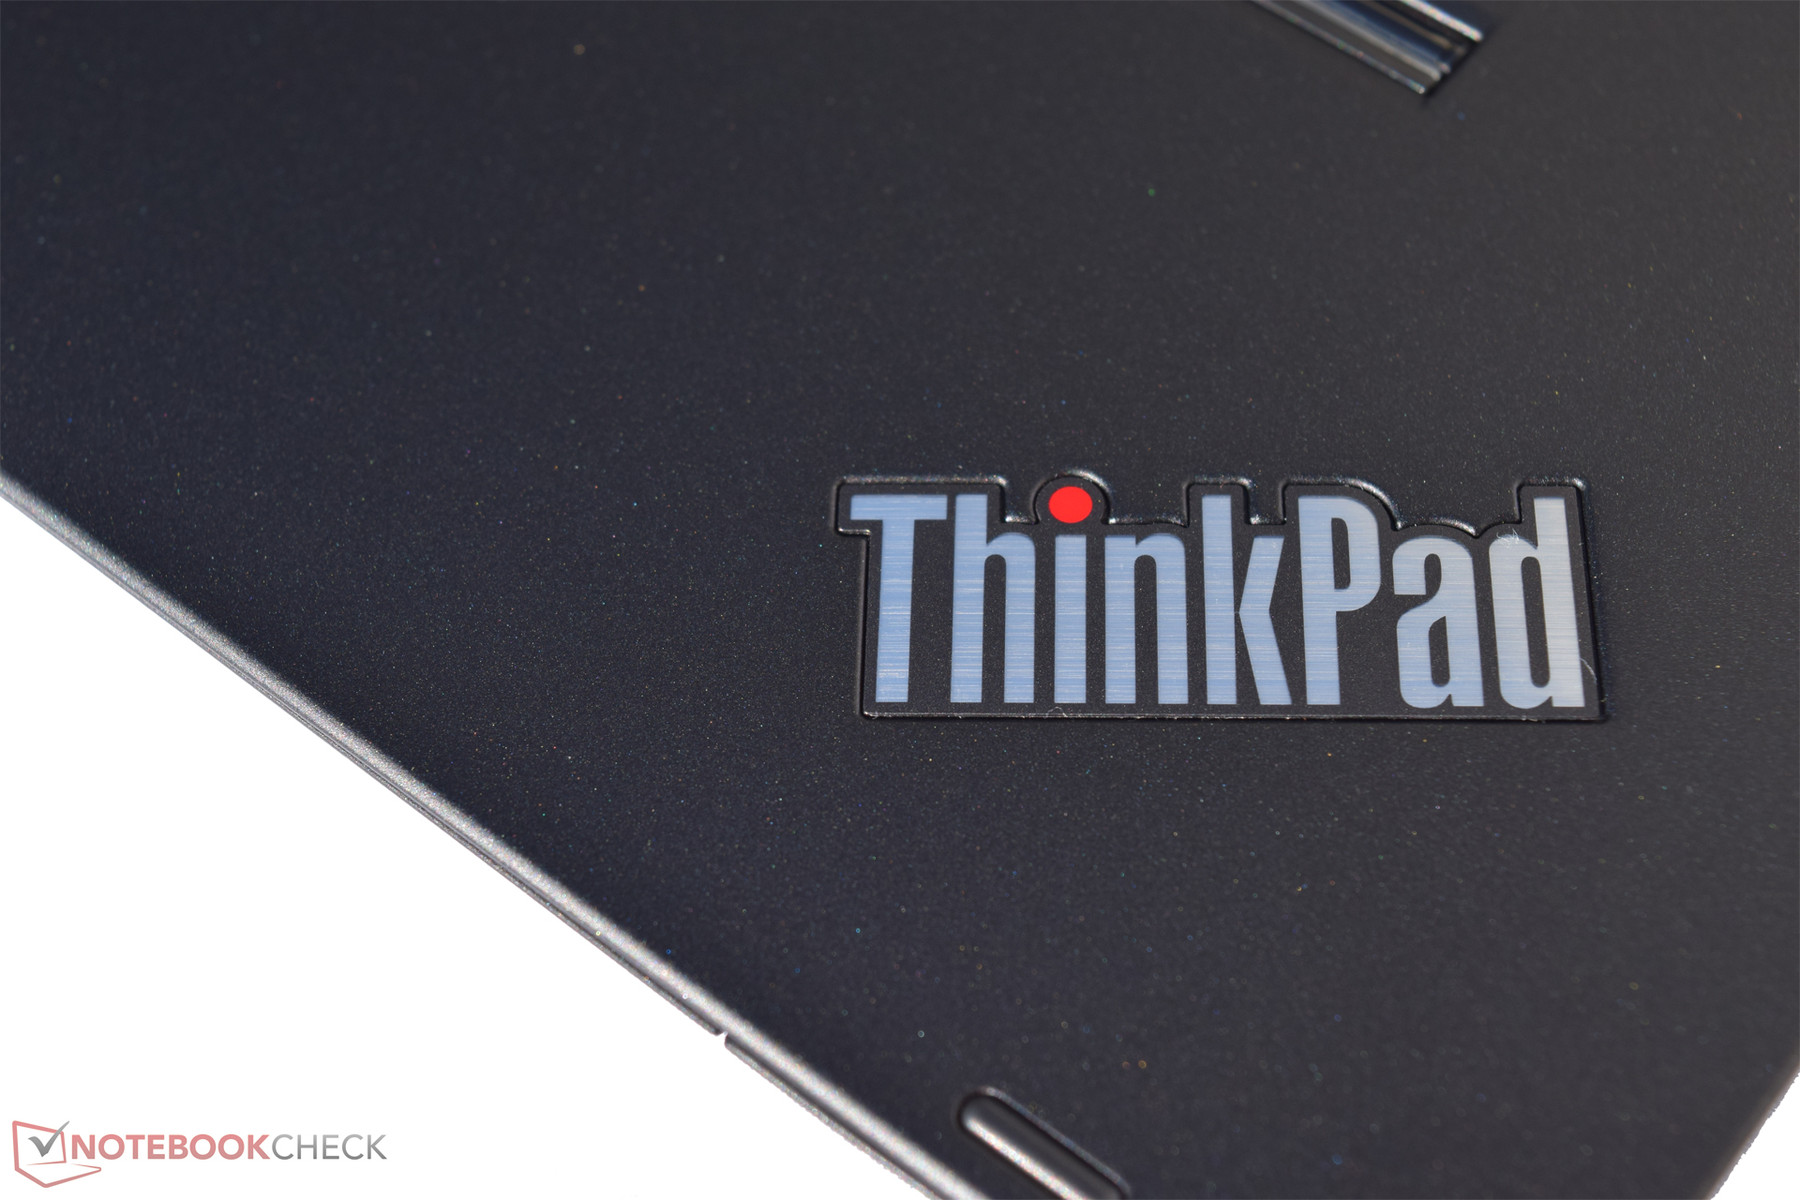 Lenovo Thinkpad Yoga 460 Convertible Review Reviews